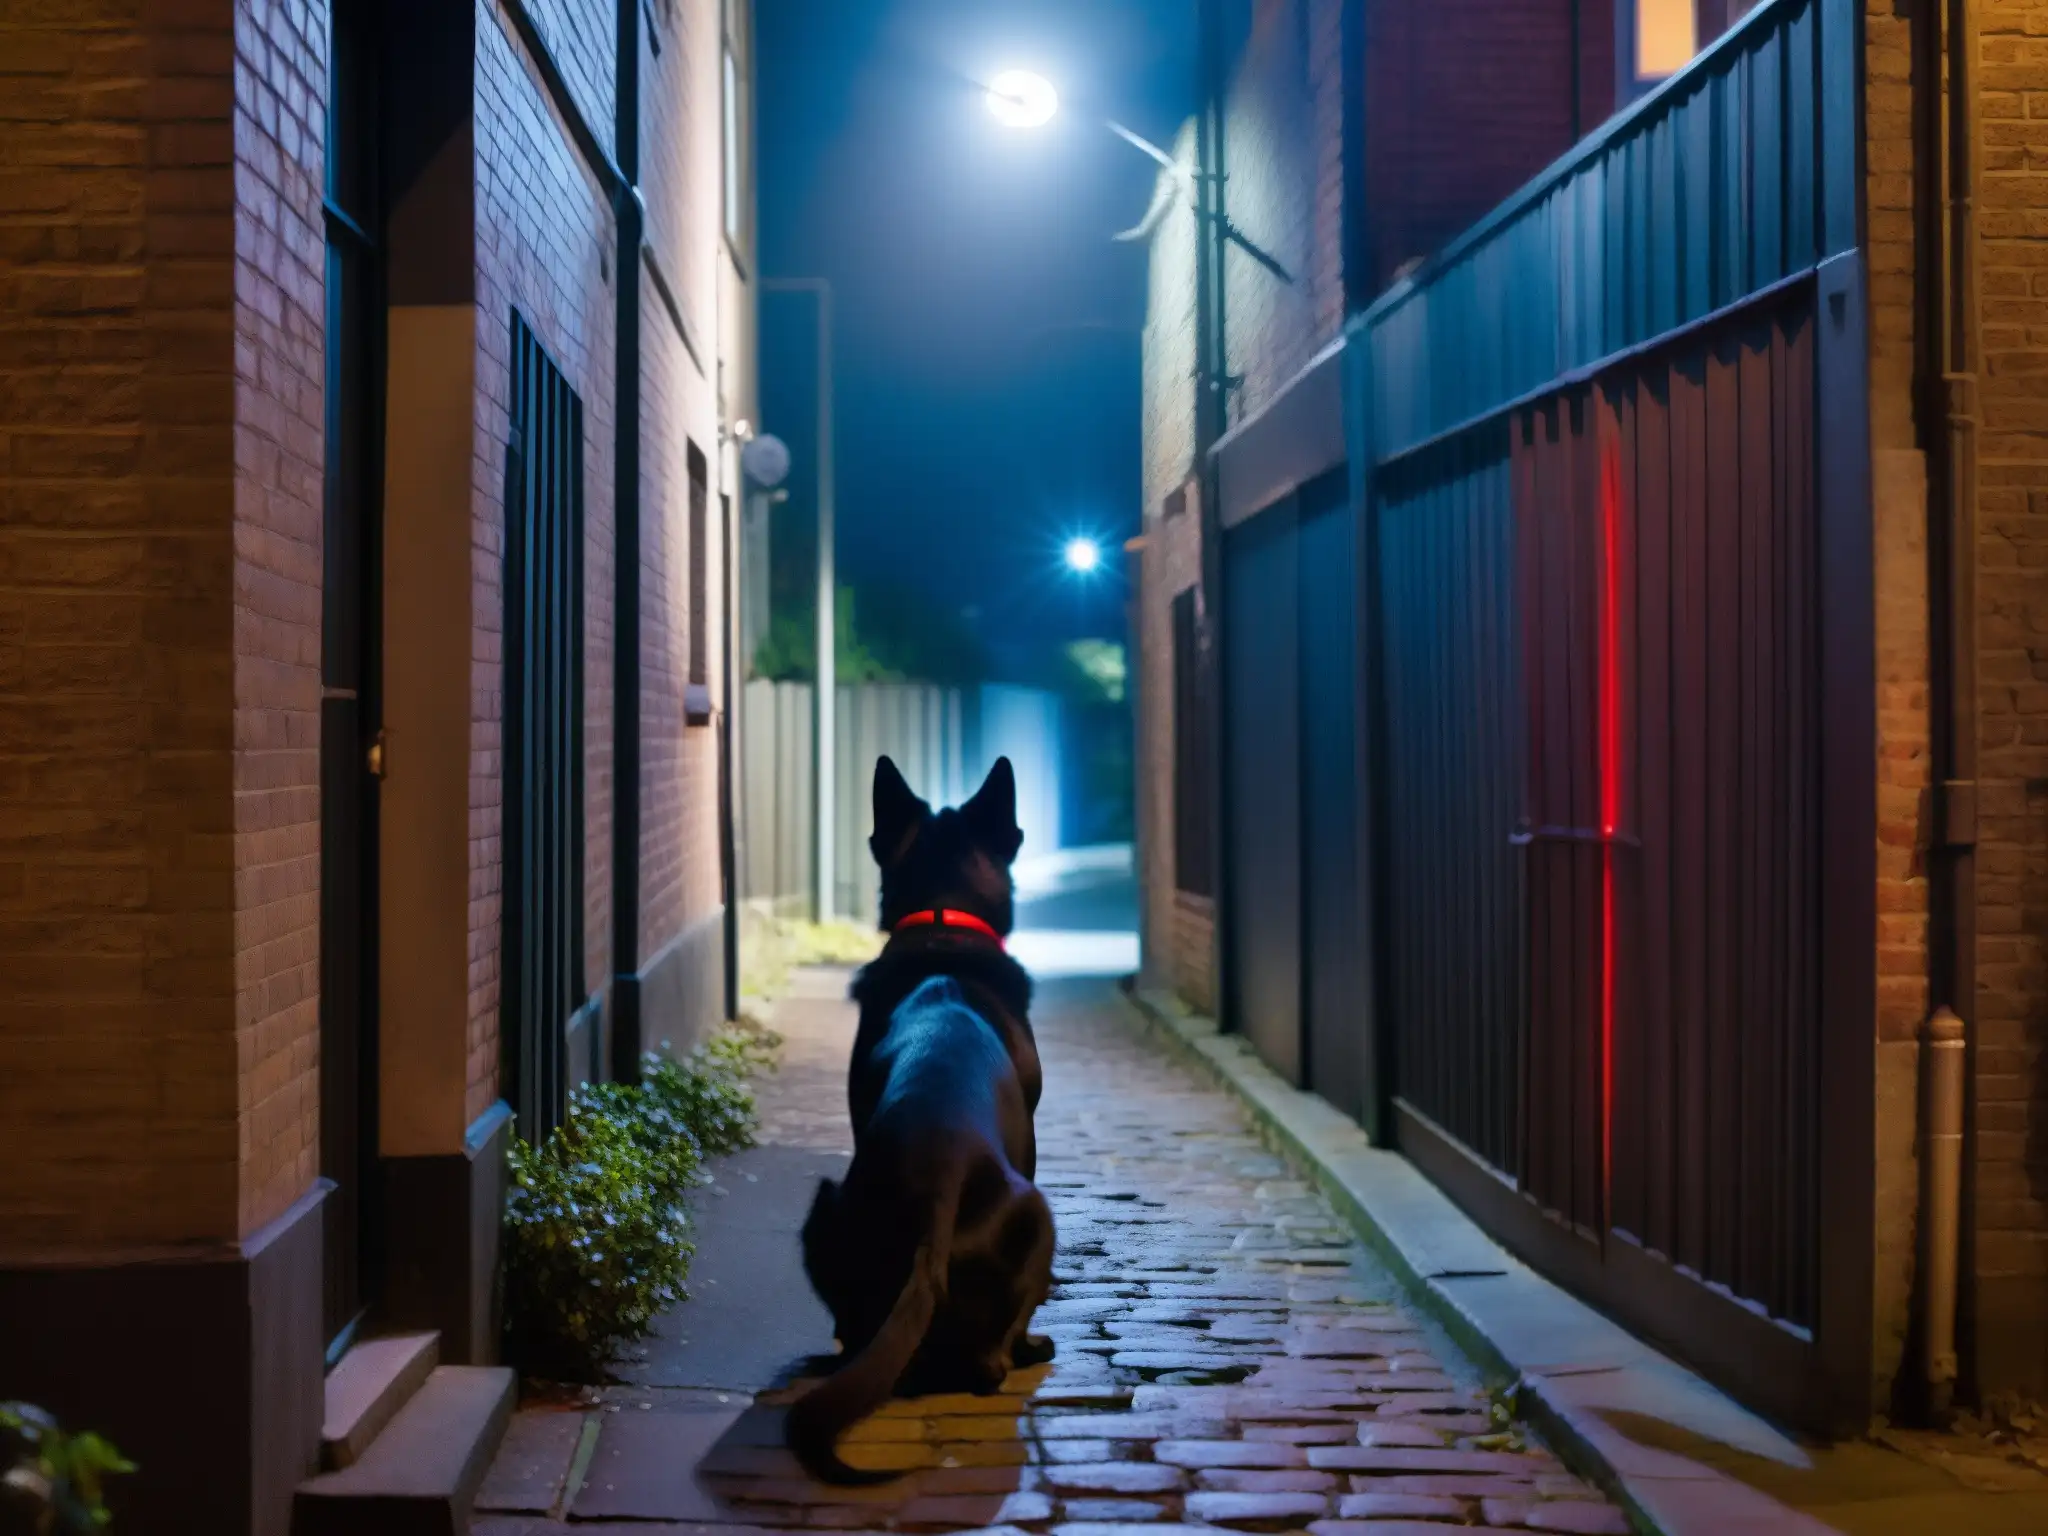 Un oscuro callejón nocturno con un solitario farol y un inquietante perro negro de ojos rojos